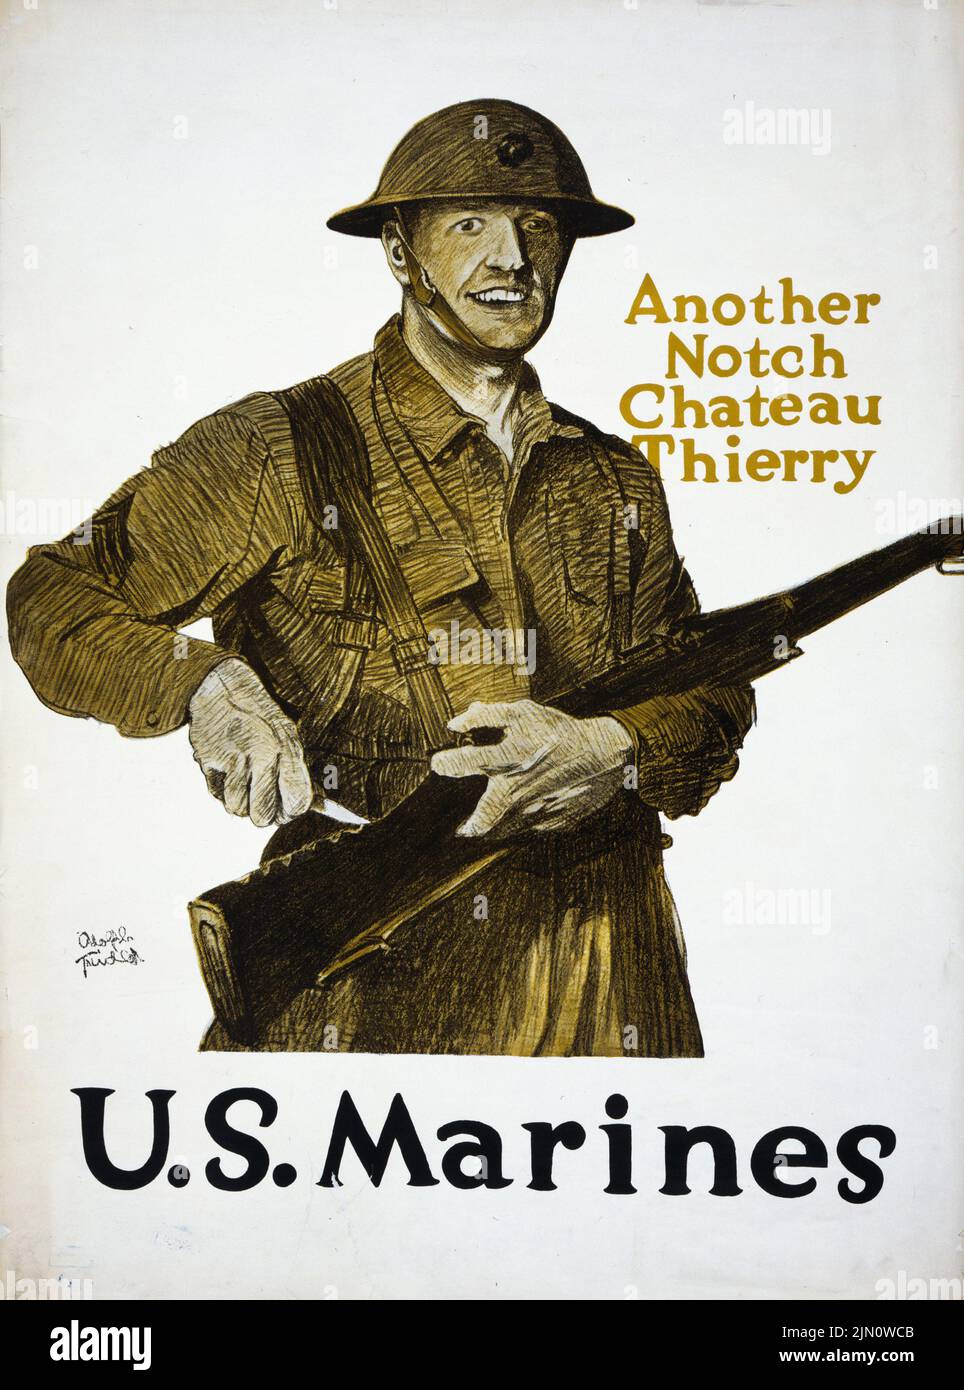 Eine weitere Kerbe, Chateau Thierry – U.S. Marines (1918) Poster aus der Zeit des Ersten Weltkriegs von Adolph Treidler Stockfoto